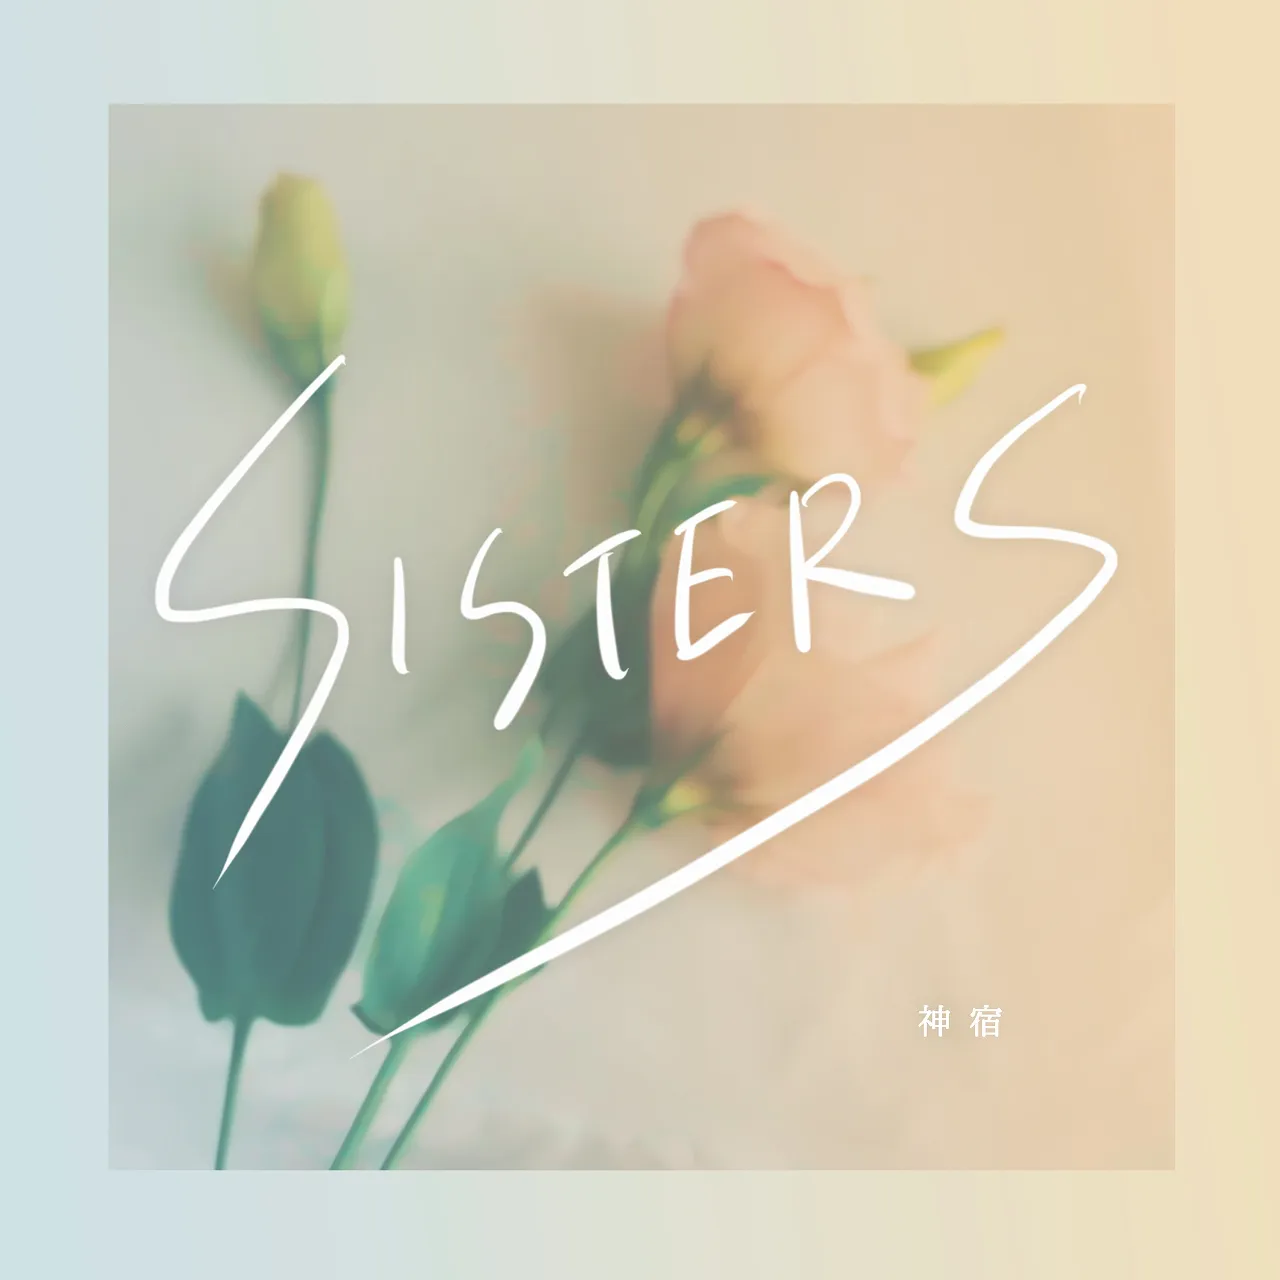 【写真を見る】美人姉妹ユニットによる新曲「SISTERS」サムネイル画像